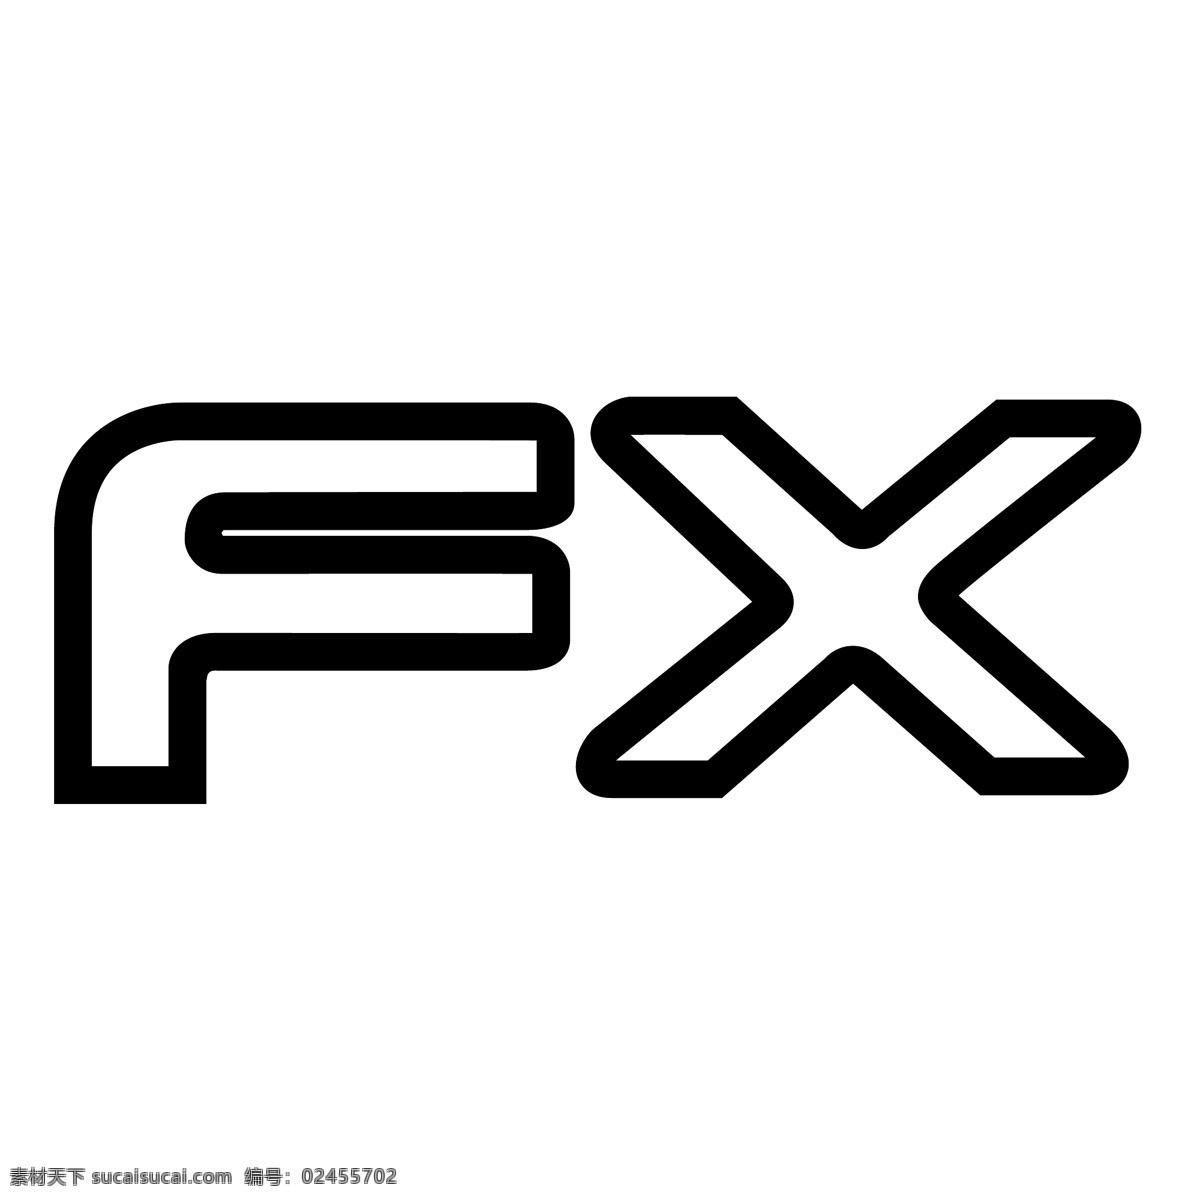 fx 矢量标志下载 免费矢量标识 商标 品牌标识 标识 矢量 免费 品牌 公司 白色